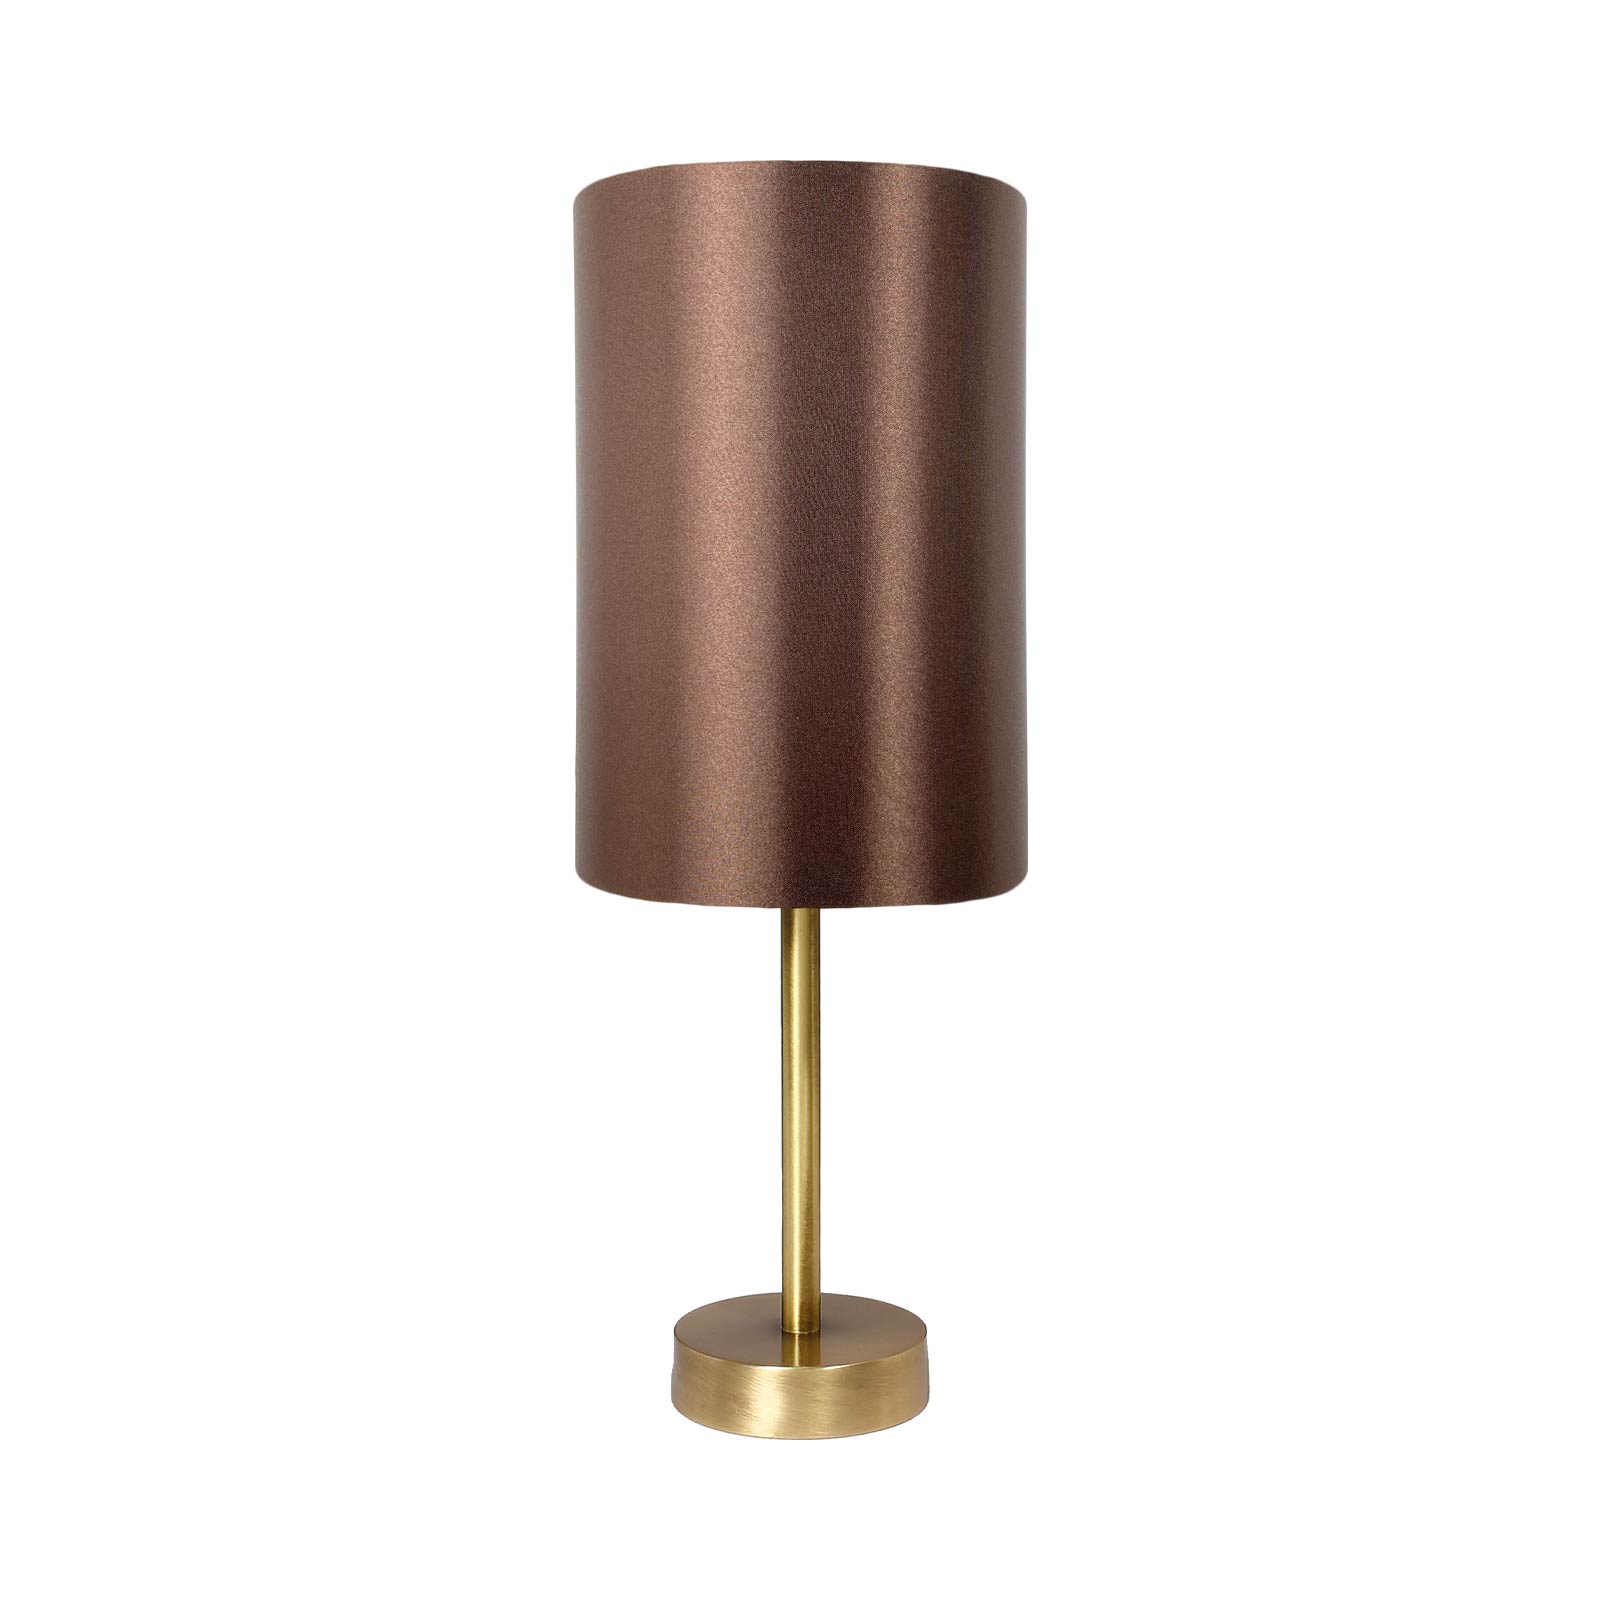 Tischlampe Messing Stoff H: 38,5 cm E27 in Bronze Braun